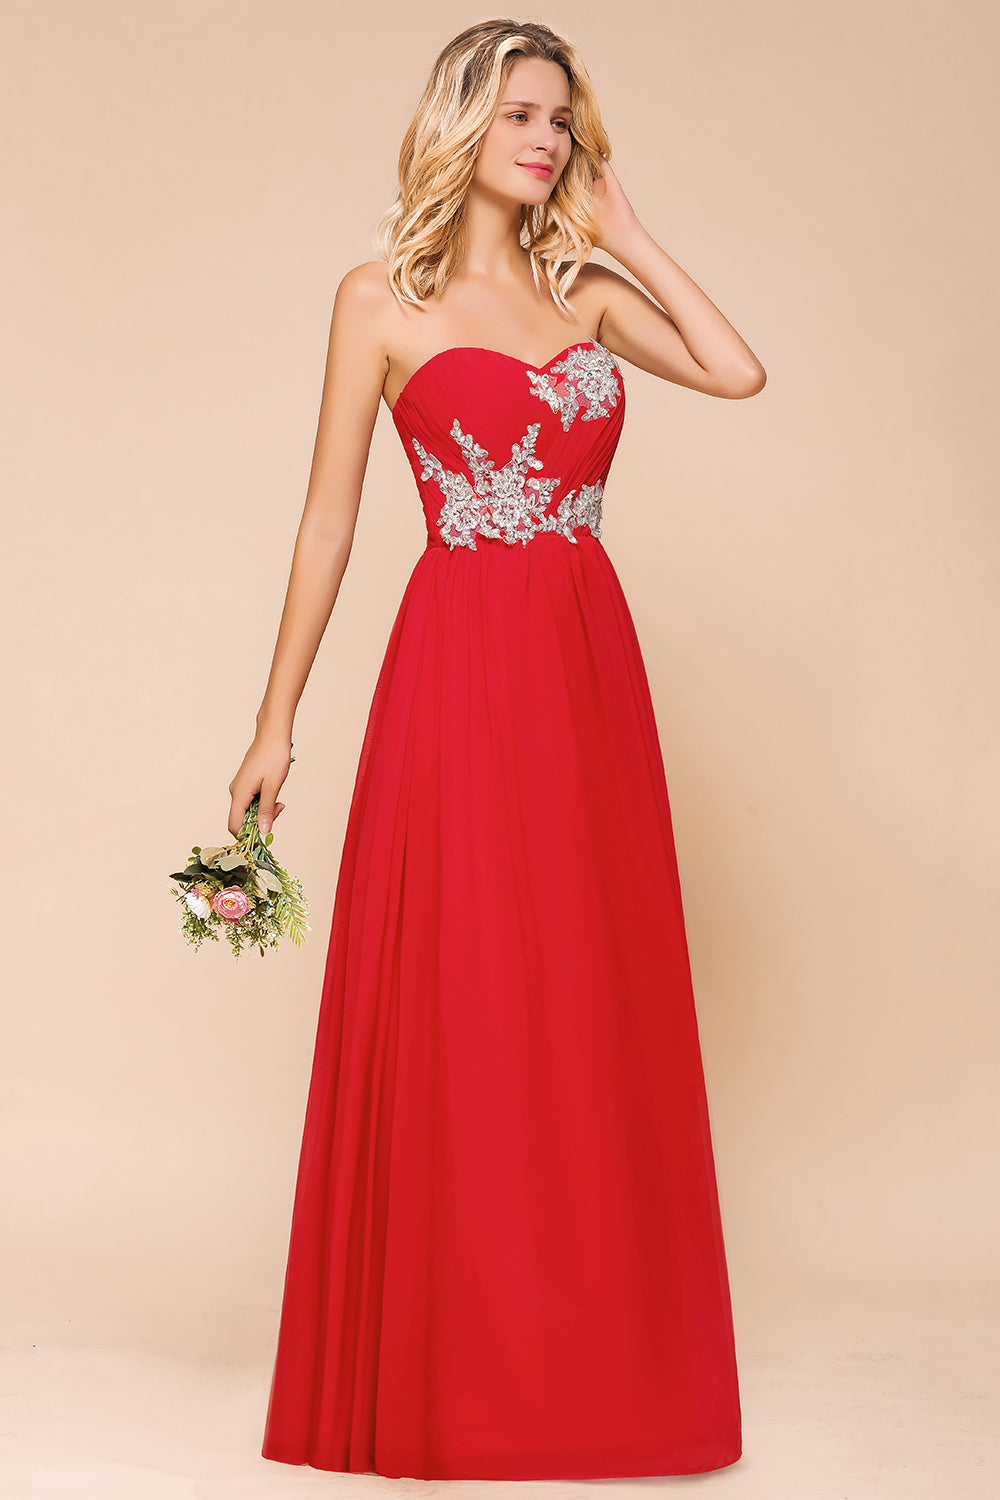 Suchen Sie Schöne Brautjungfernkleider Rot online bei babyonlinedress.de. Brautjungfernkleider Lang Günstig für Sie zur Hochzeit gehen.